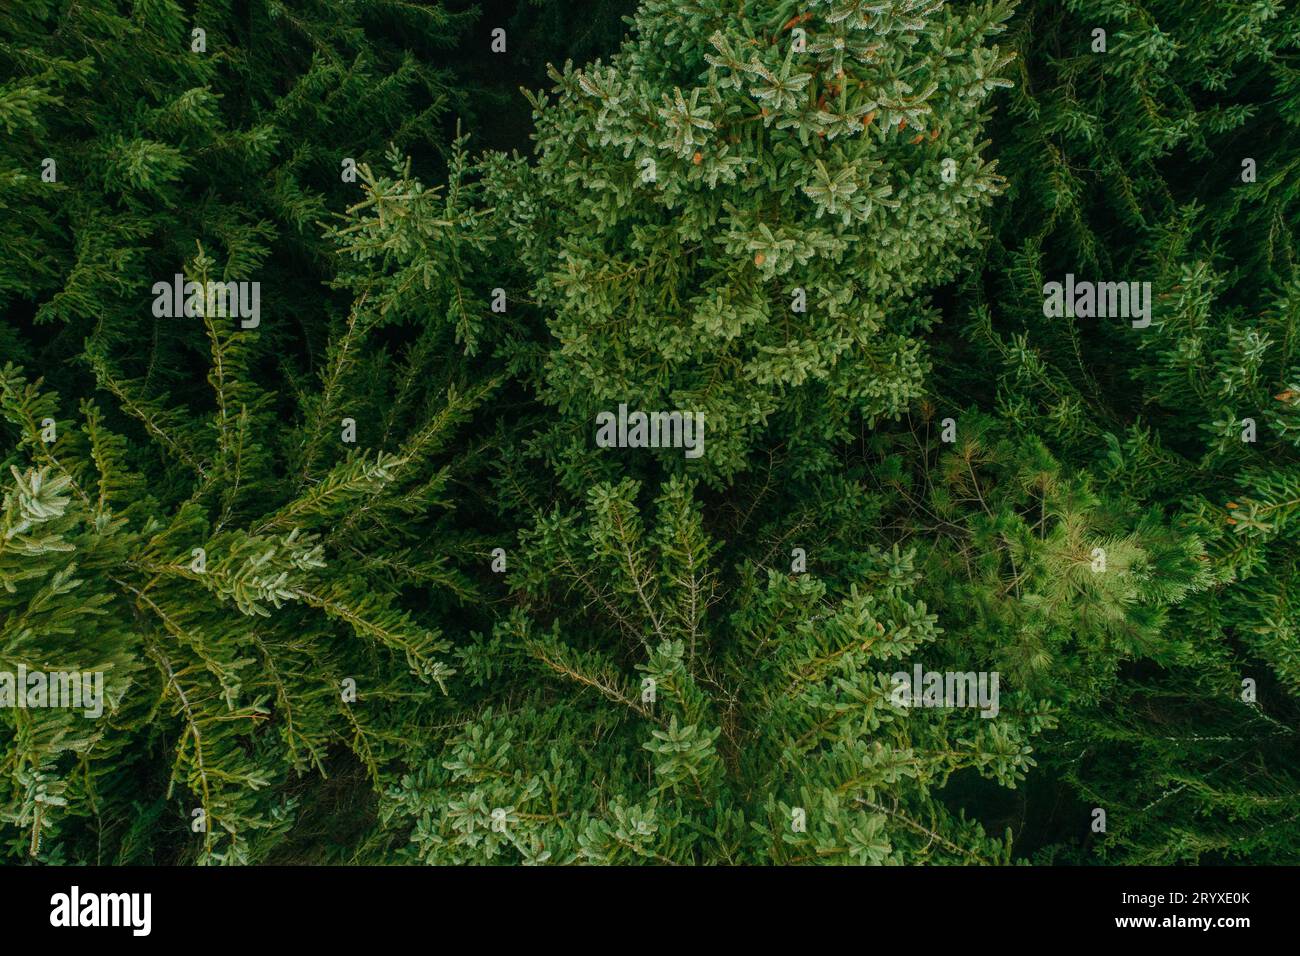 Vista aerea degli alberi verdi estivi in una foresta in un insediamento rurale. Fotografia con droni Foto Stock